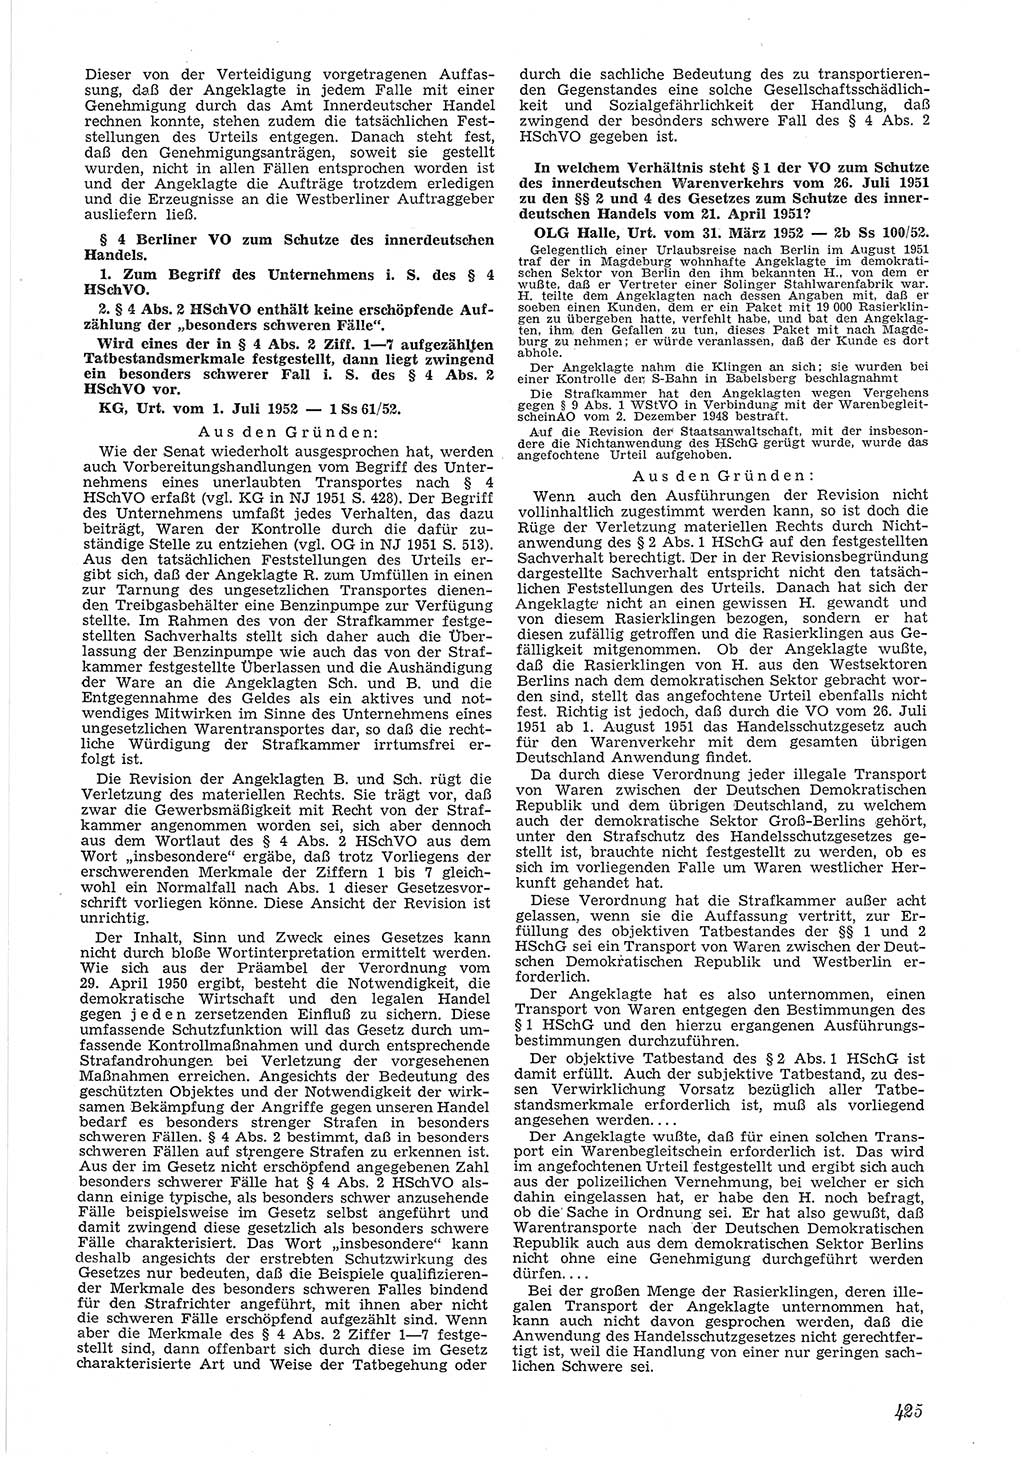 Neue Justiz (NJ), Zeitschrift für Recht und Rechtswissenschaft [Deutsche Demokratische Republik (DDR)], 6. Jahrgang 1952, Seite 425 (NJ DDR 1952, S. 425)